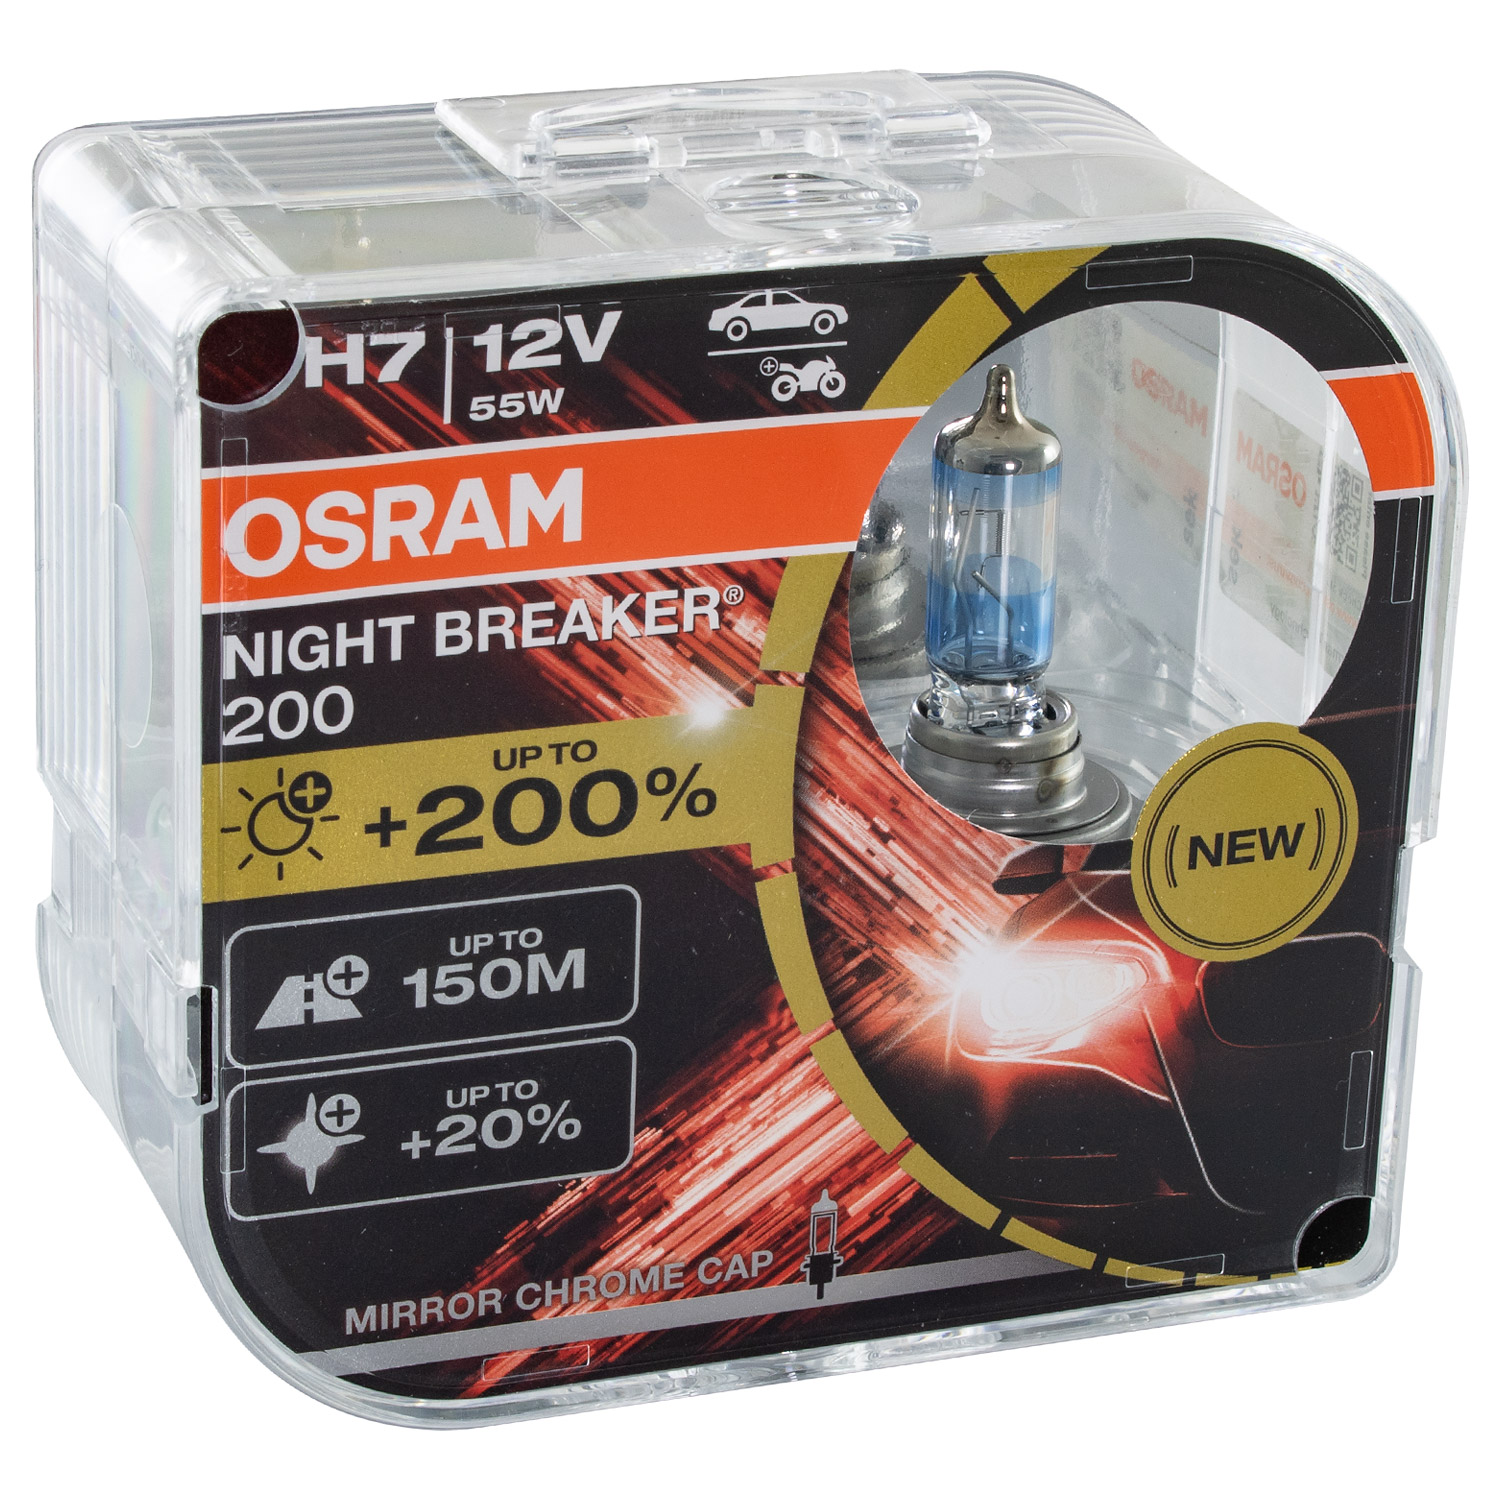 OSRAM H7 NIGHT BREAKER 200 DuoBox bis zu 200% mehr Licht NEXT GENERATION 12V 55W